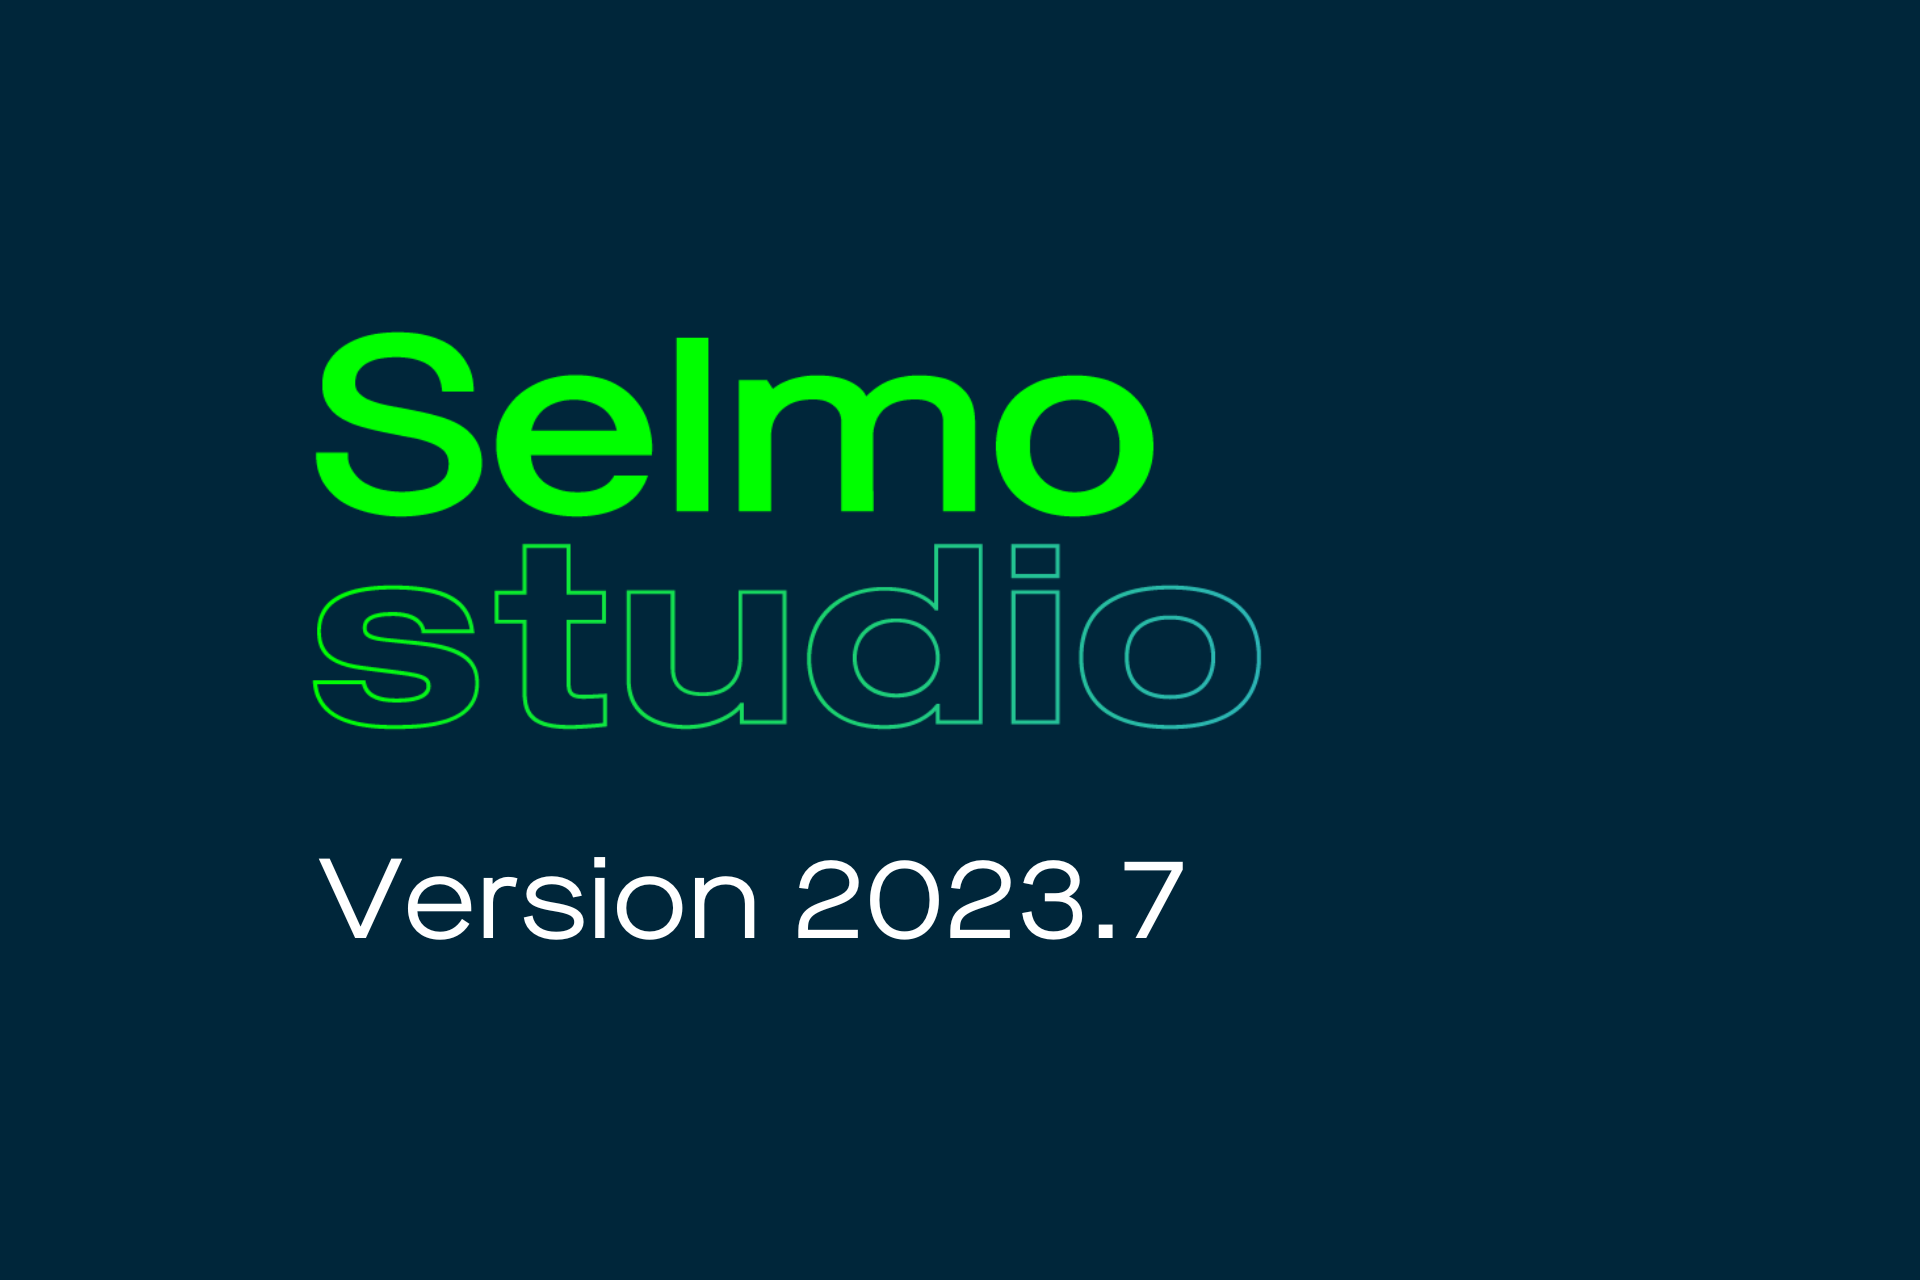 Selmo Studio Release Version 2023.7